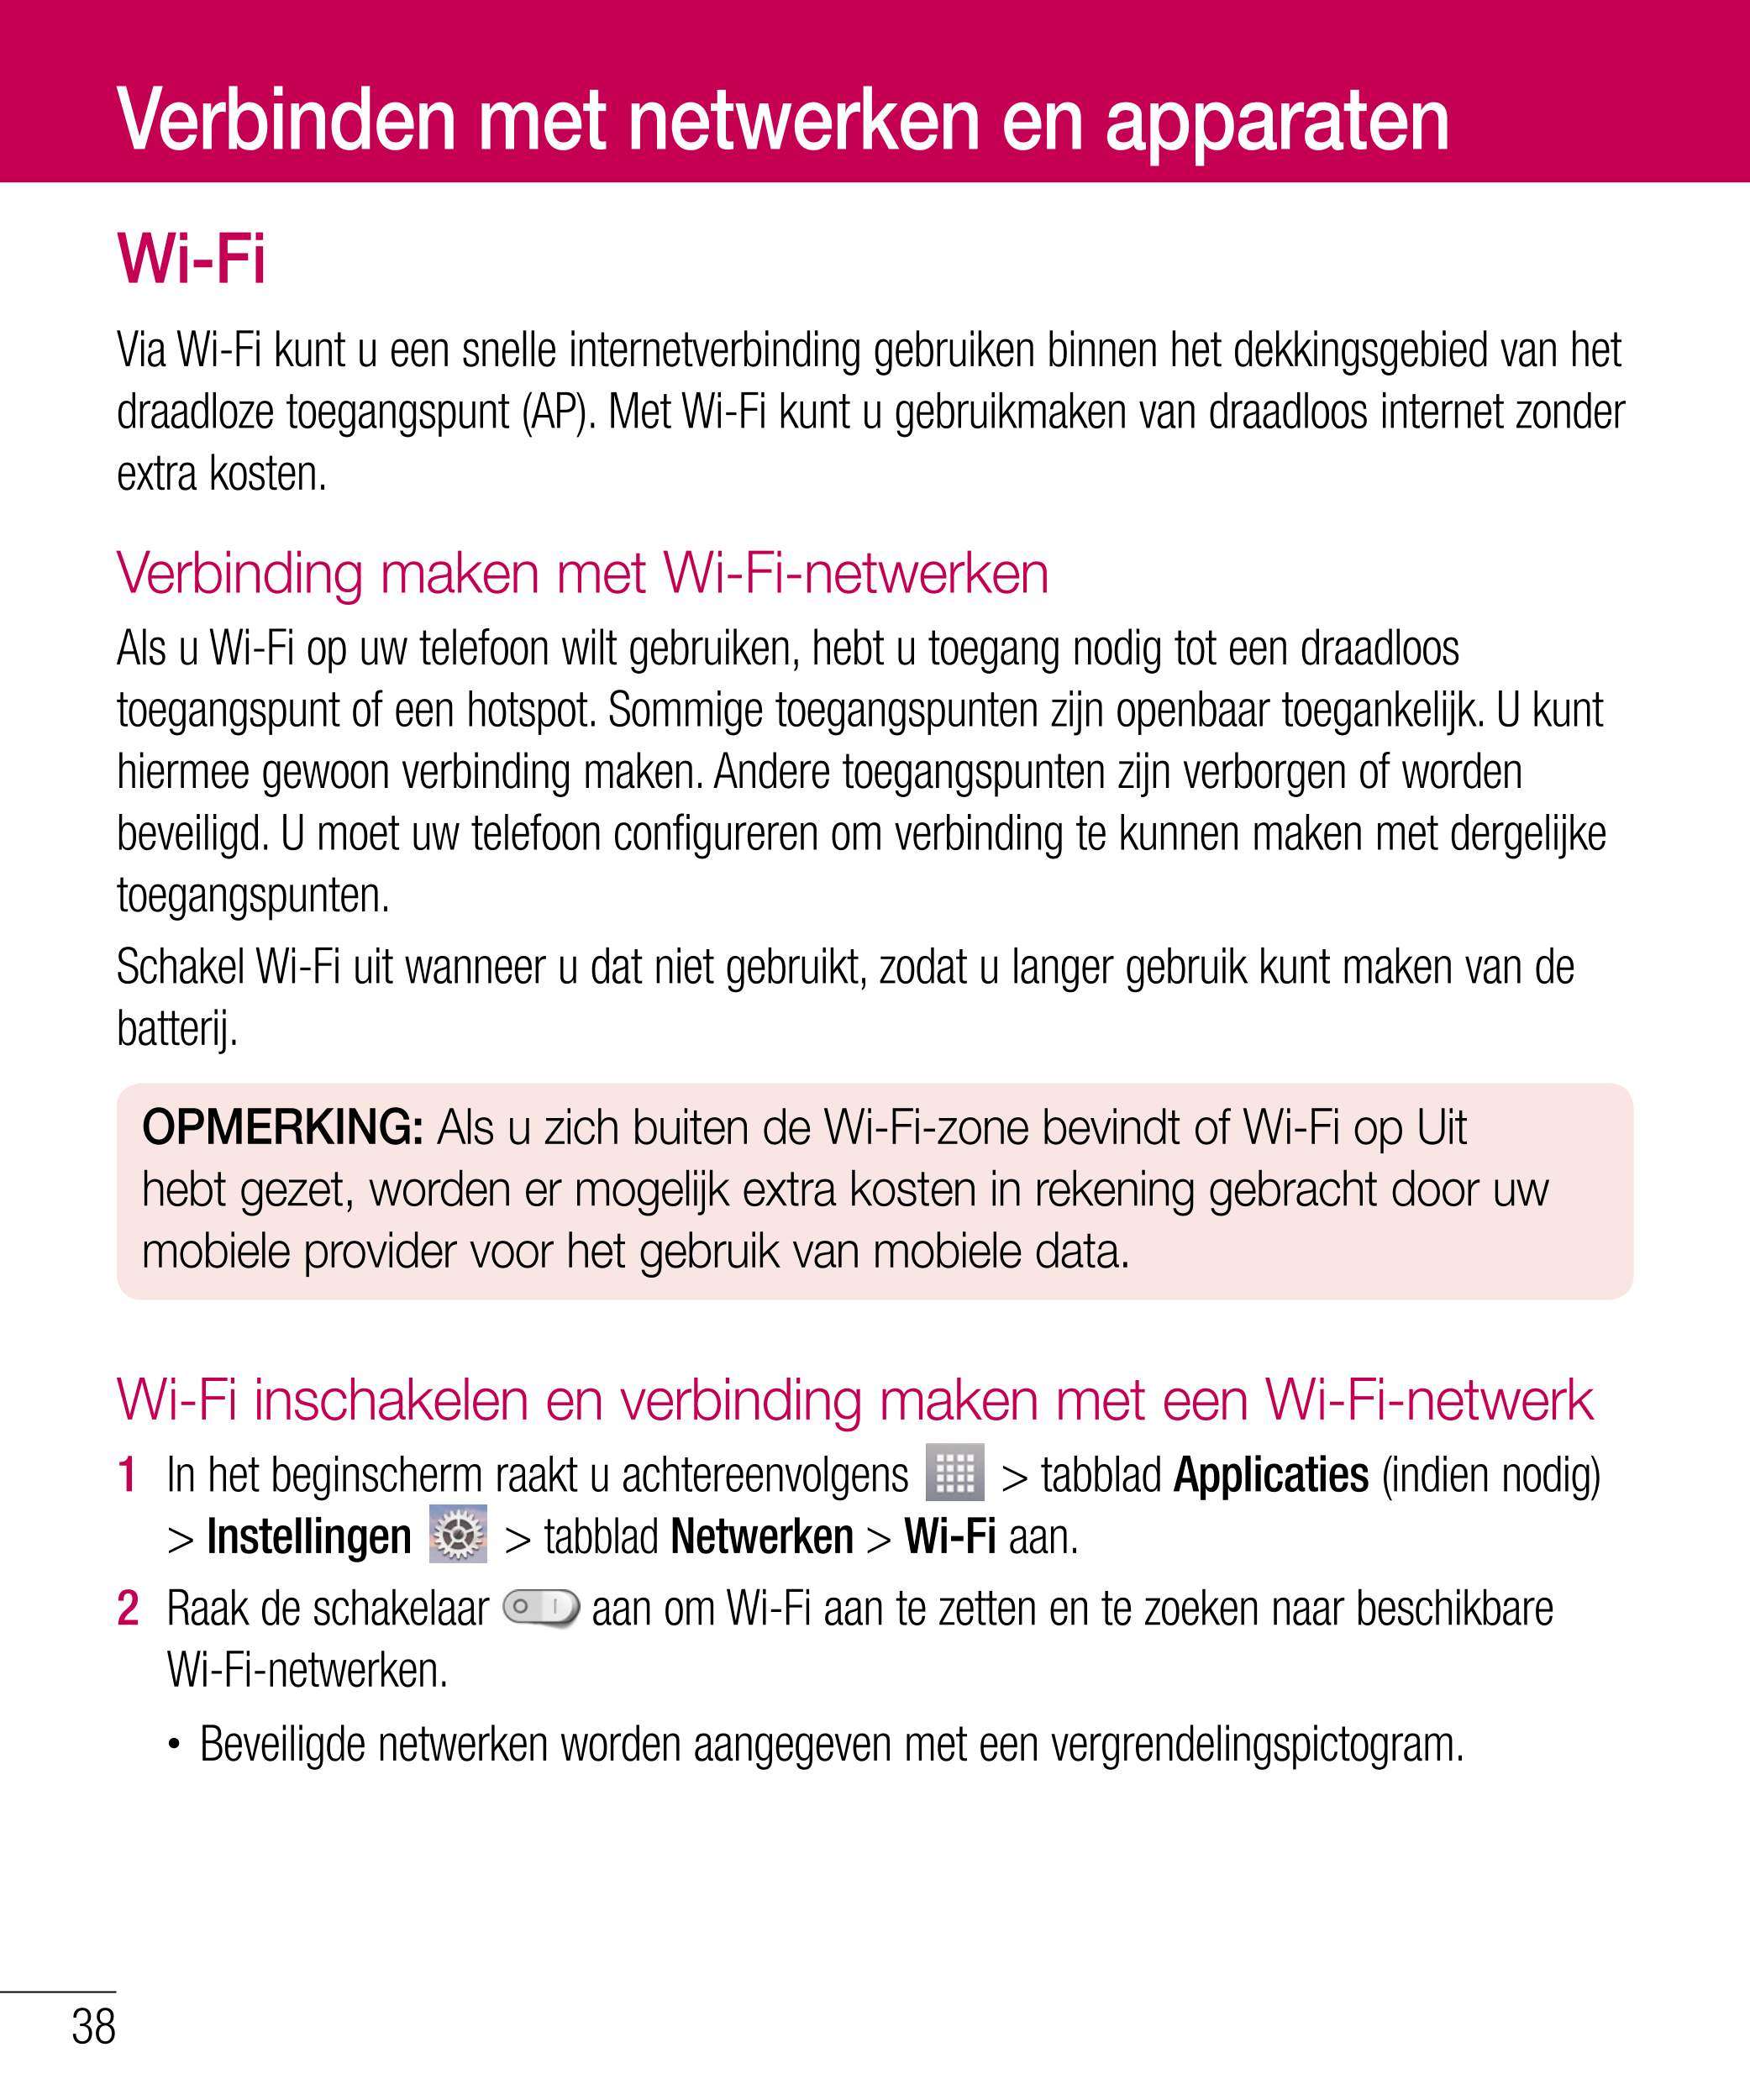 Verbinden met netwerken en apparaten
Wi-Fi
Via Wi-Fi kunt u een snelle internetverbinding gebruiken binnen het dekkingsgebied va